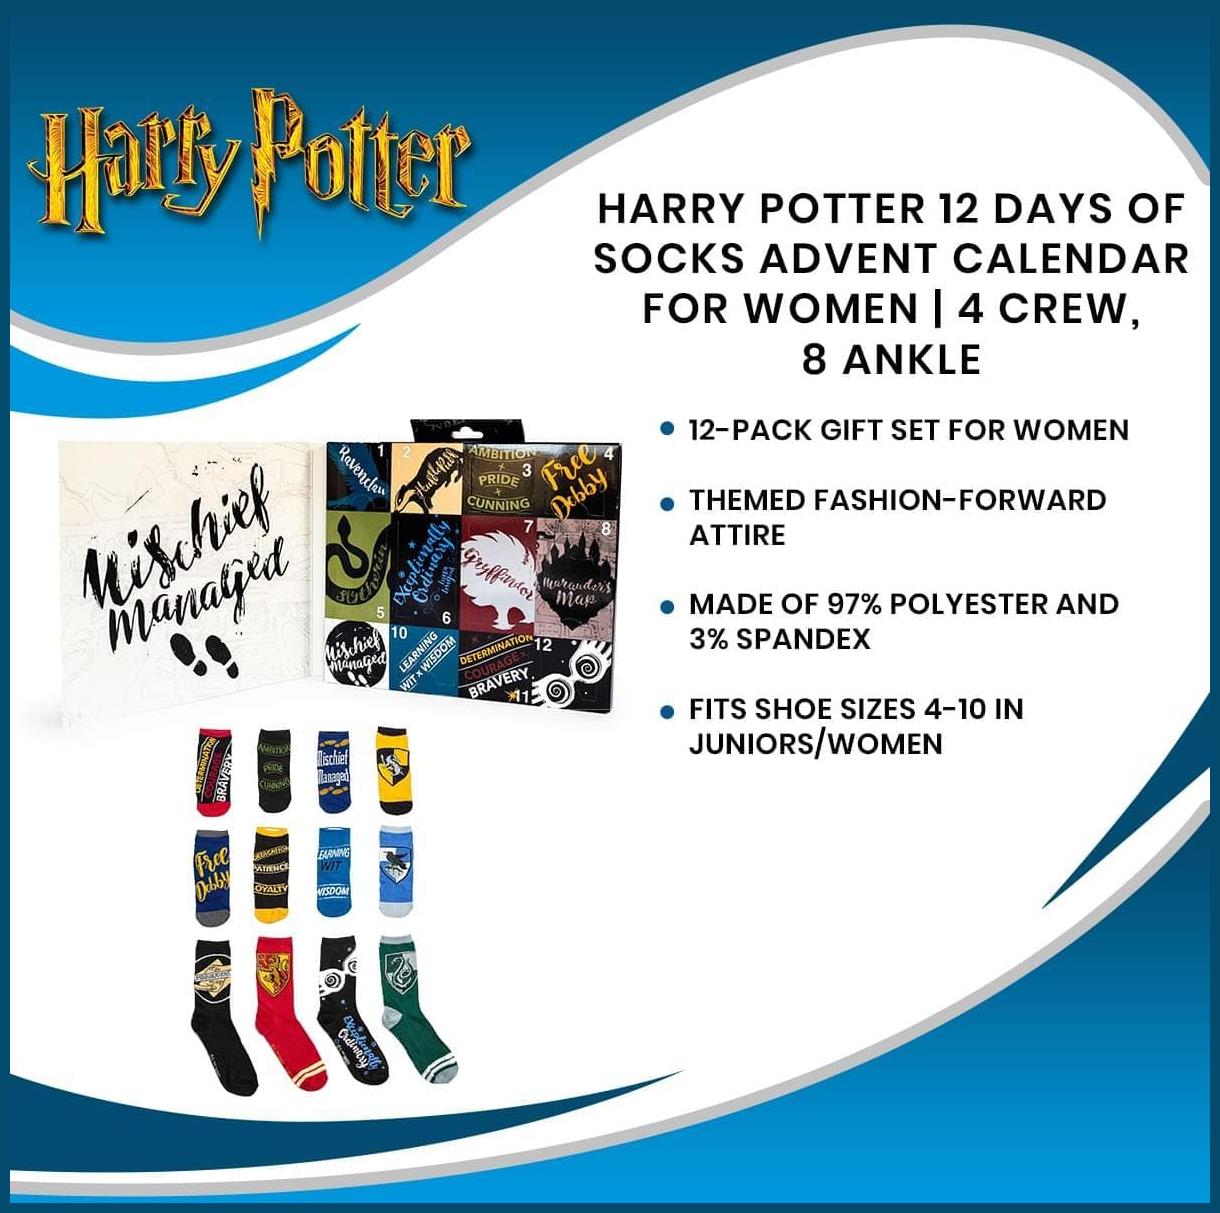 Harry Potter 12 Days of Socks Advent Calendar for Women 4 Crew, 8